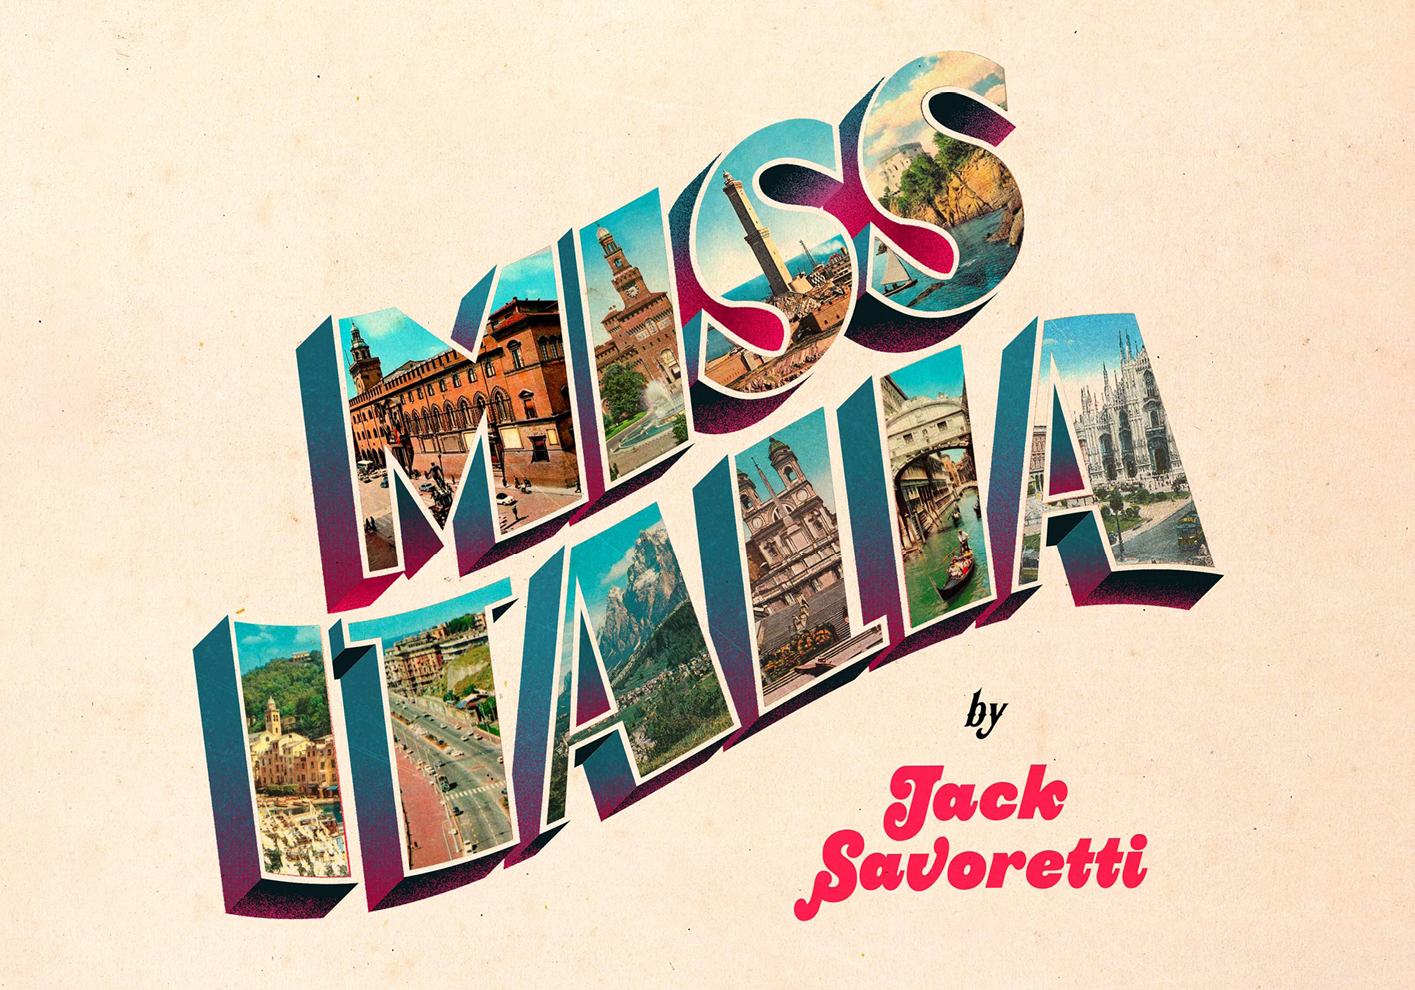 Jack Savoretti's Miss Italia album cover